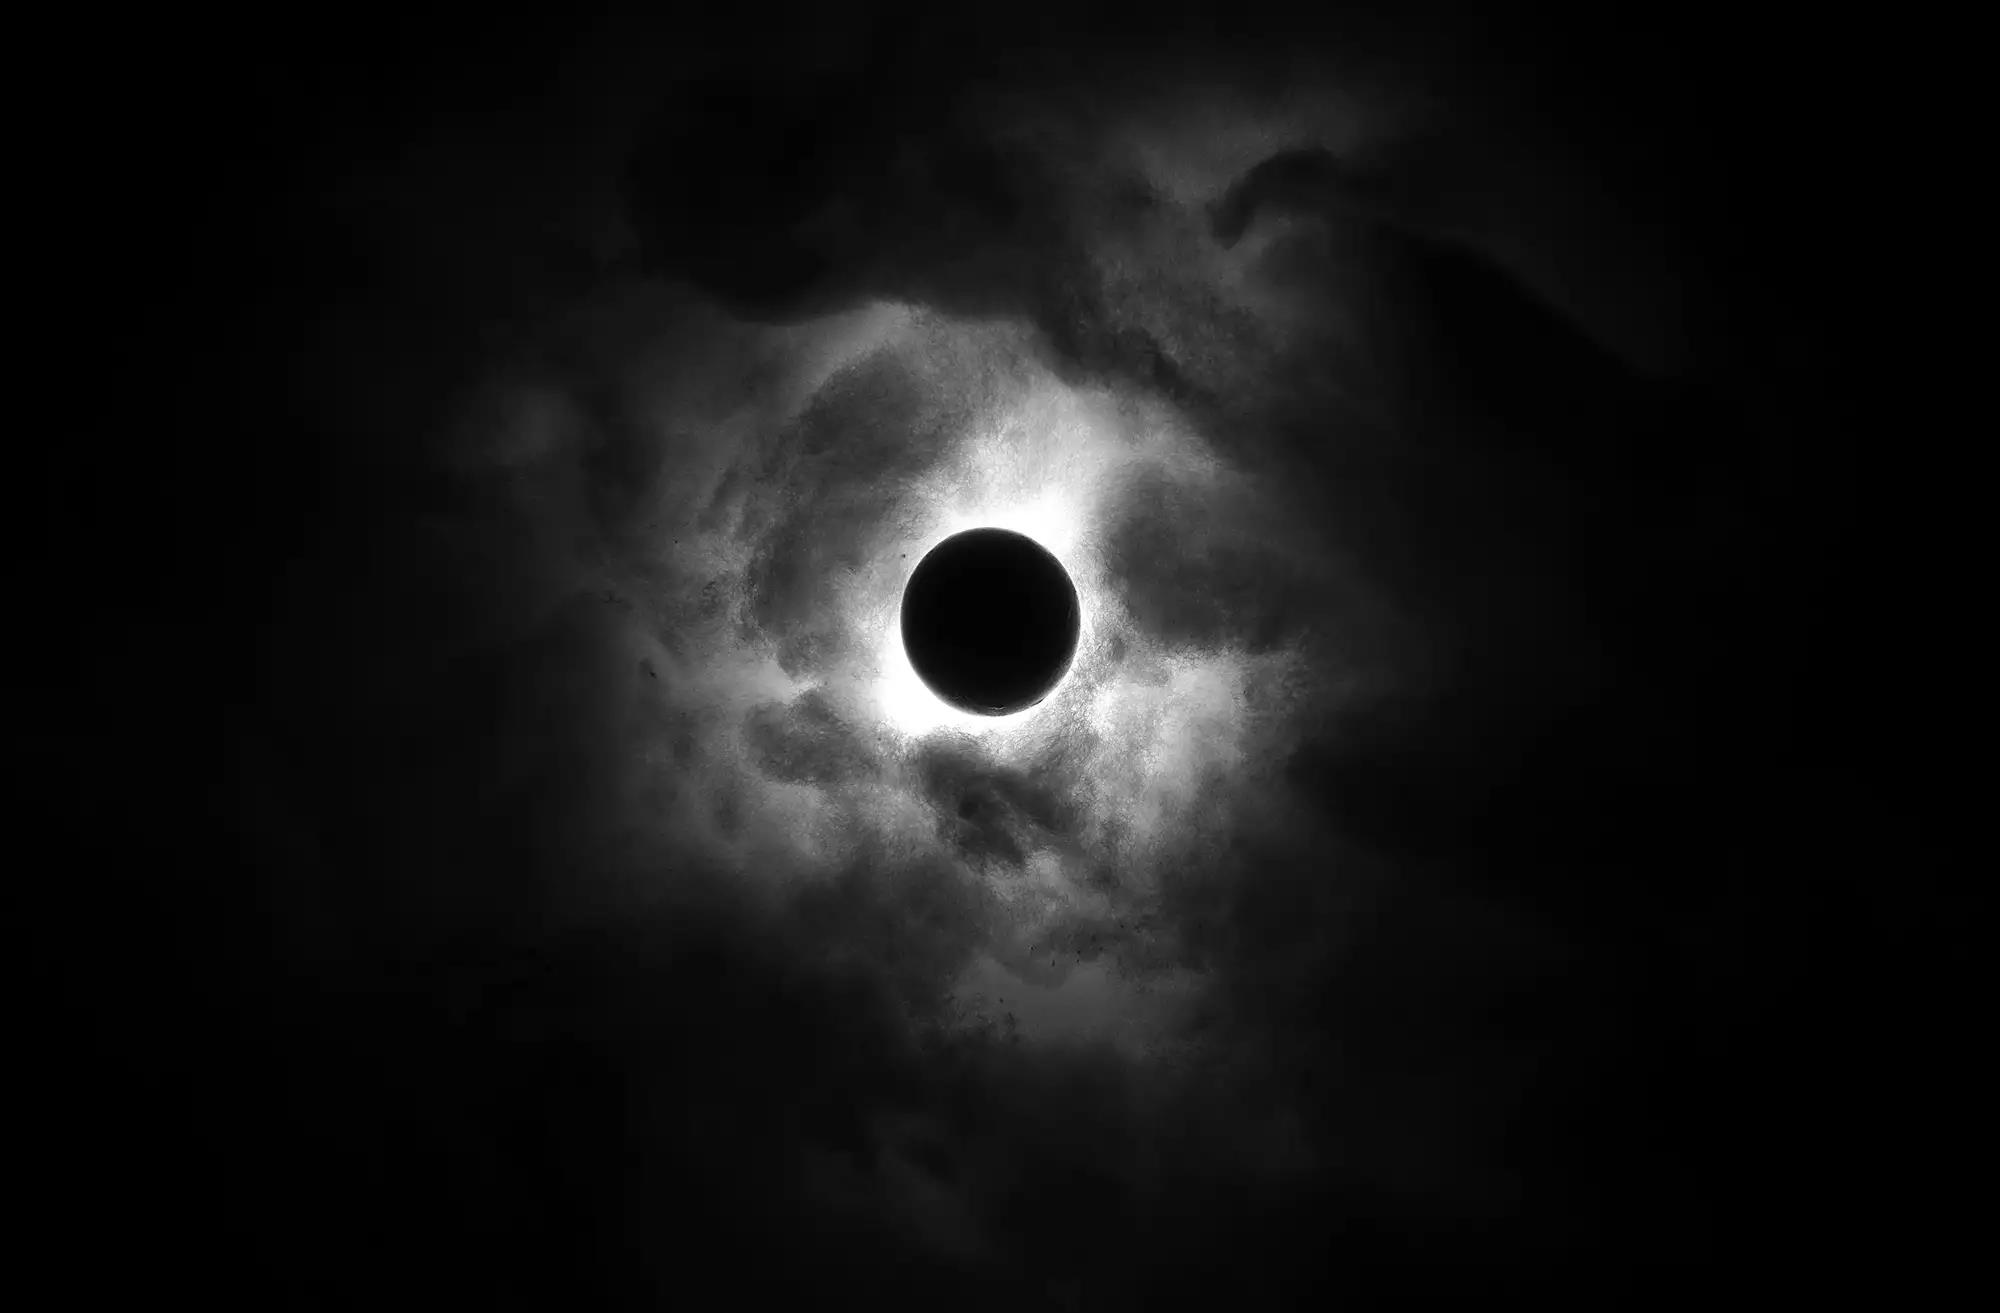 Mặt trăng đen ẩn chứa những bí mật kì bí và thú vị mà không phải ai cũng biết đến. Hãy cùng tham gia đón nhận những bức ảnh đen trắng tuyệt đẹp về một trong những hiện tượng thiên nhiên huyền bí nhất của trái đất.